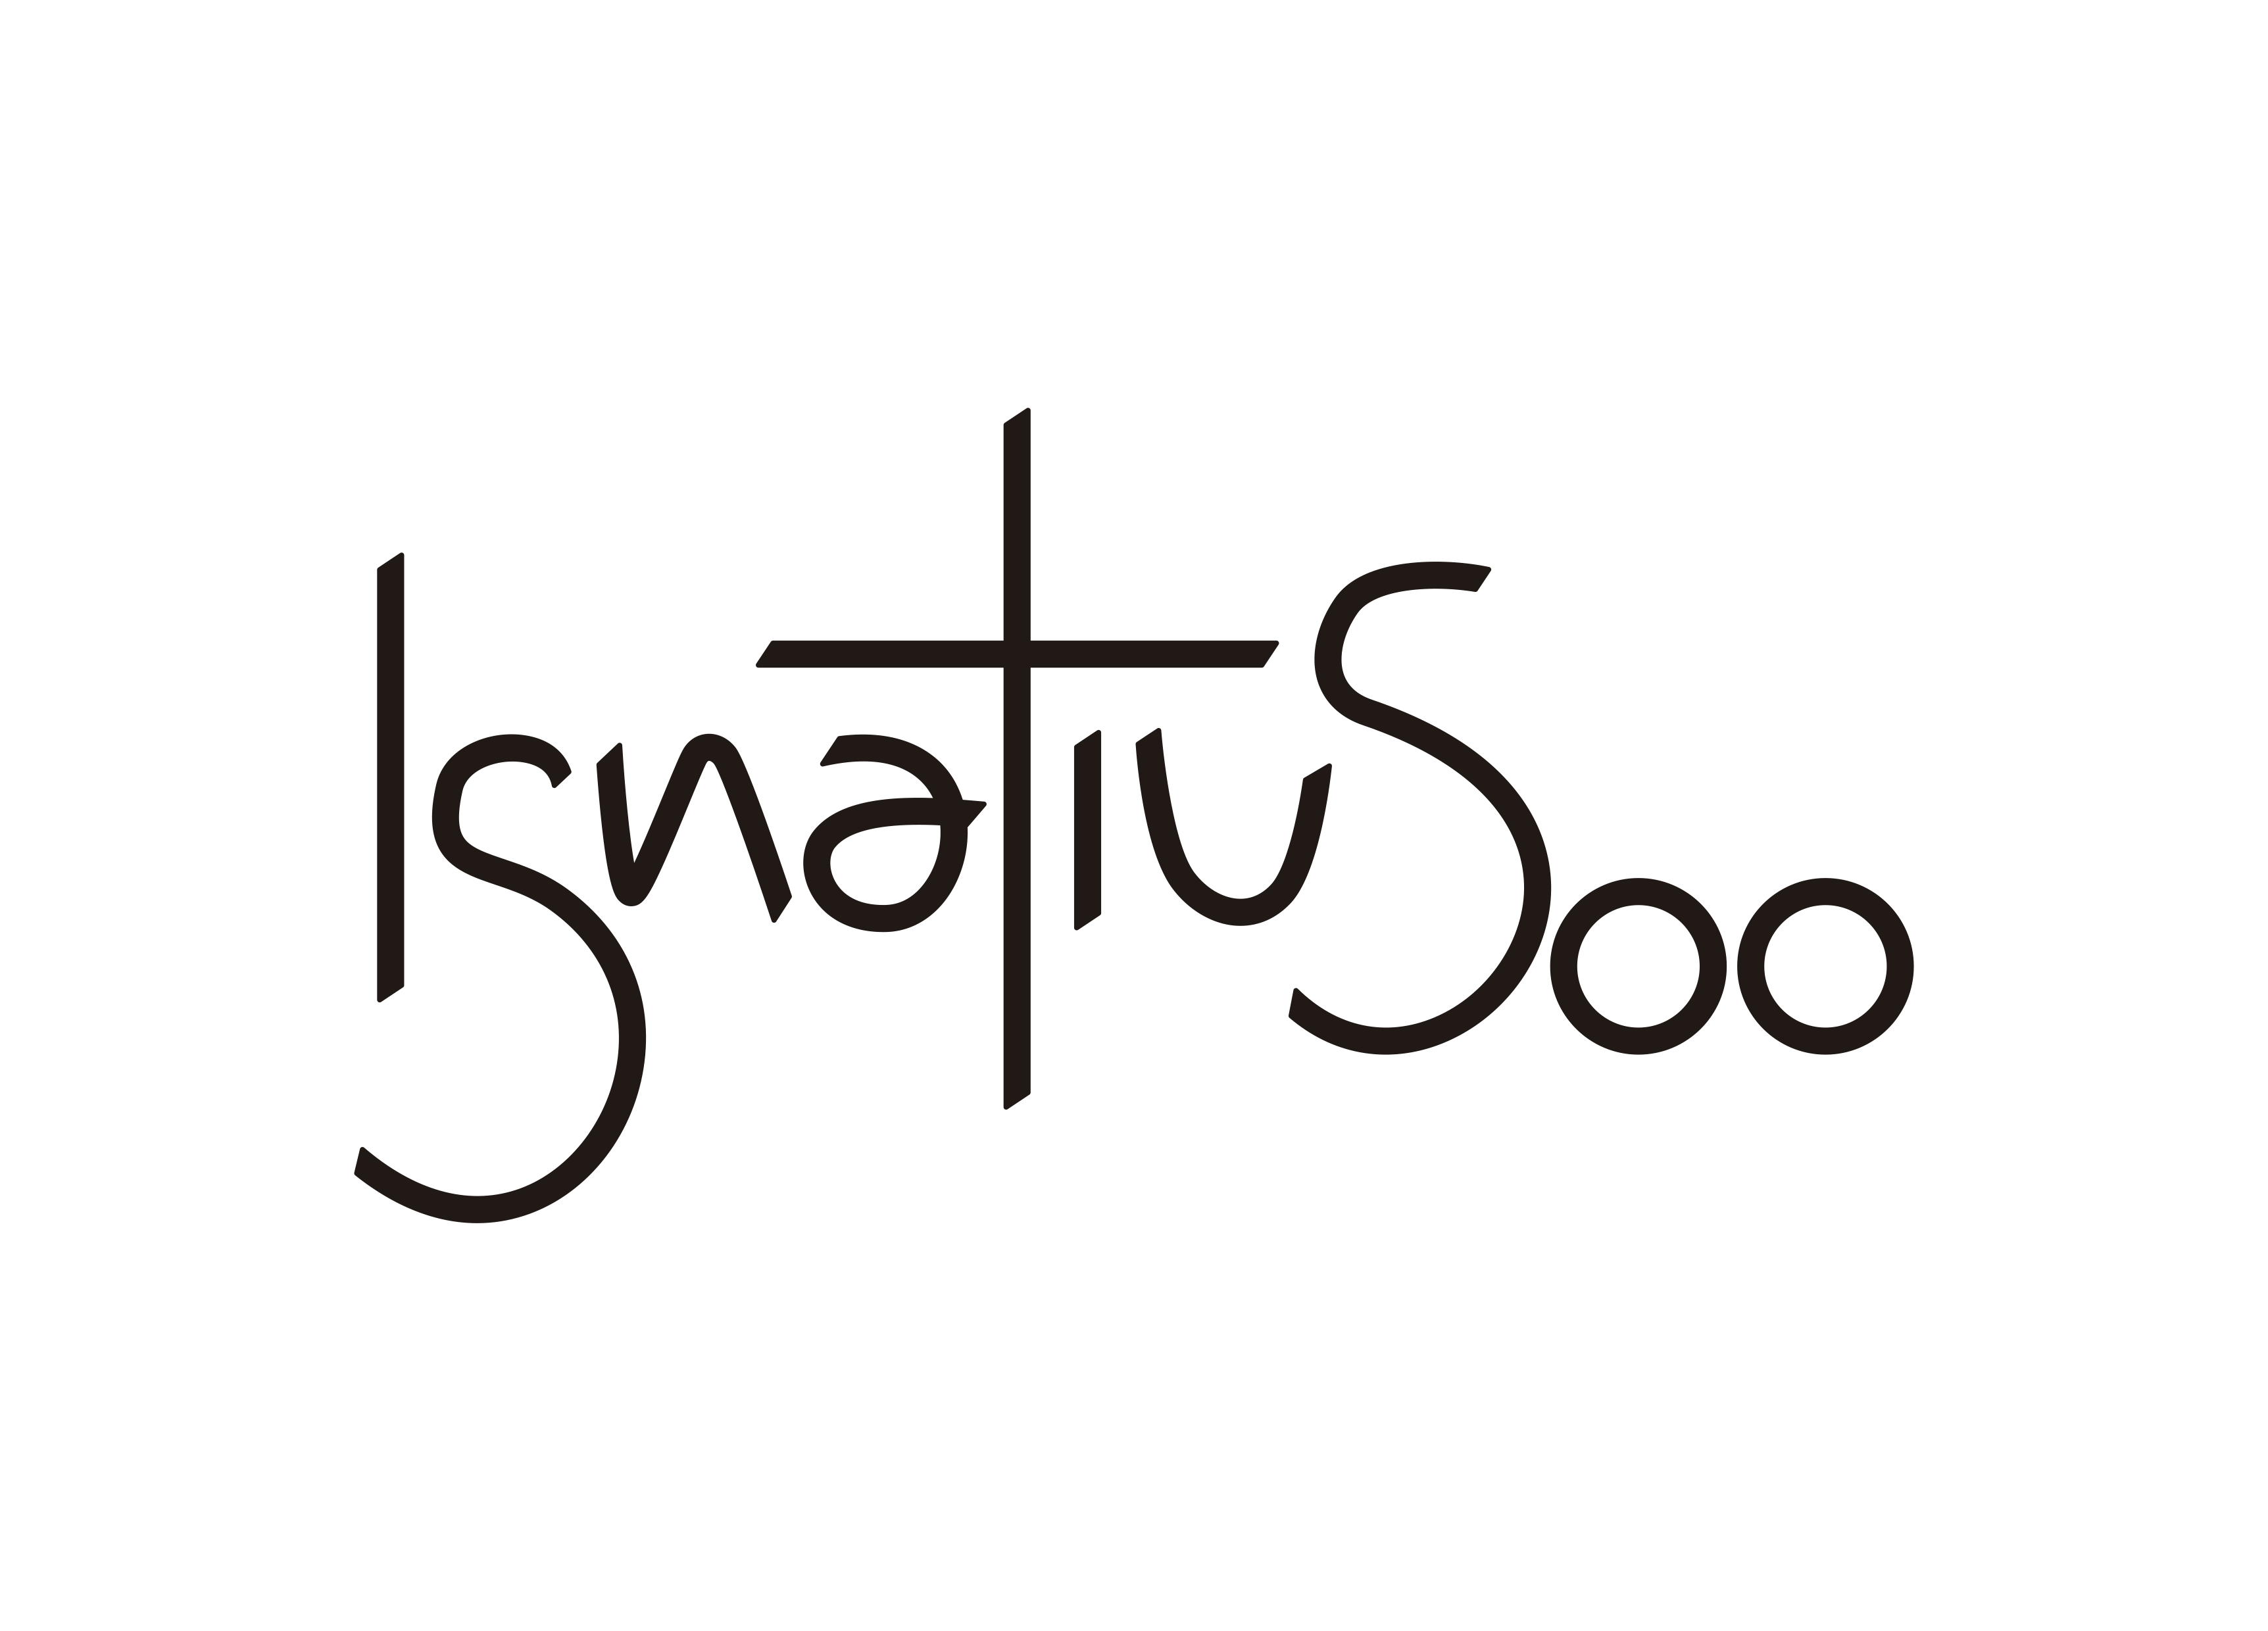 ignatius500_logo black.png